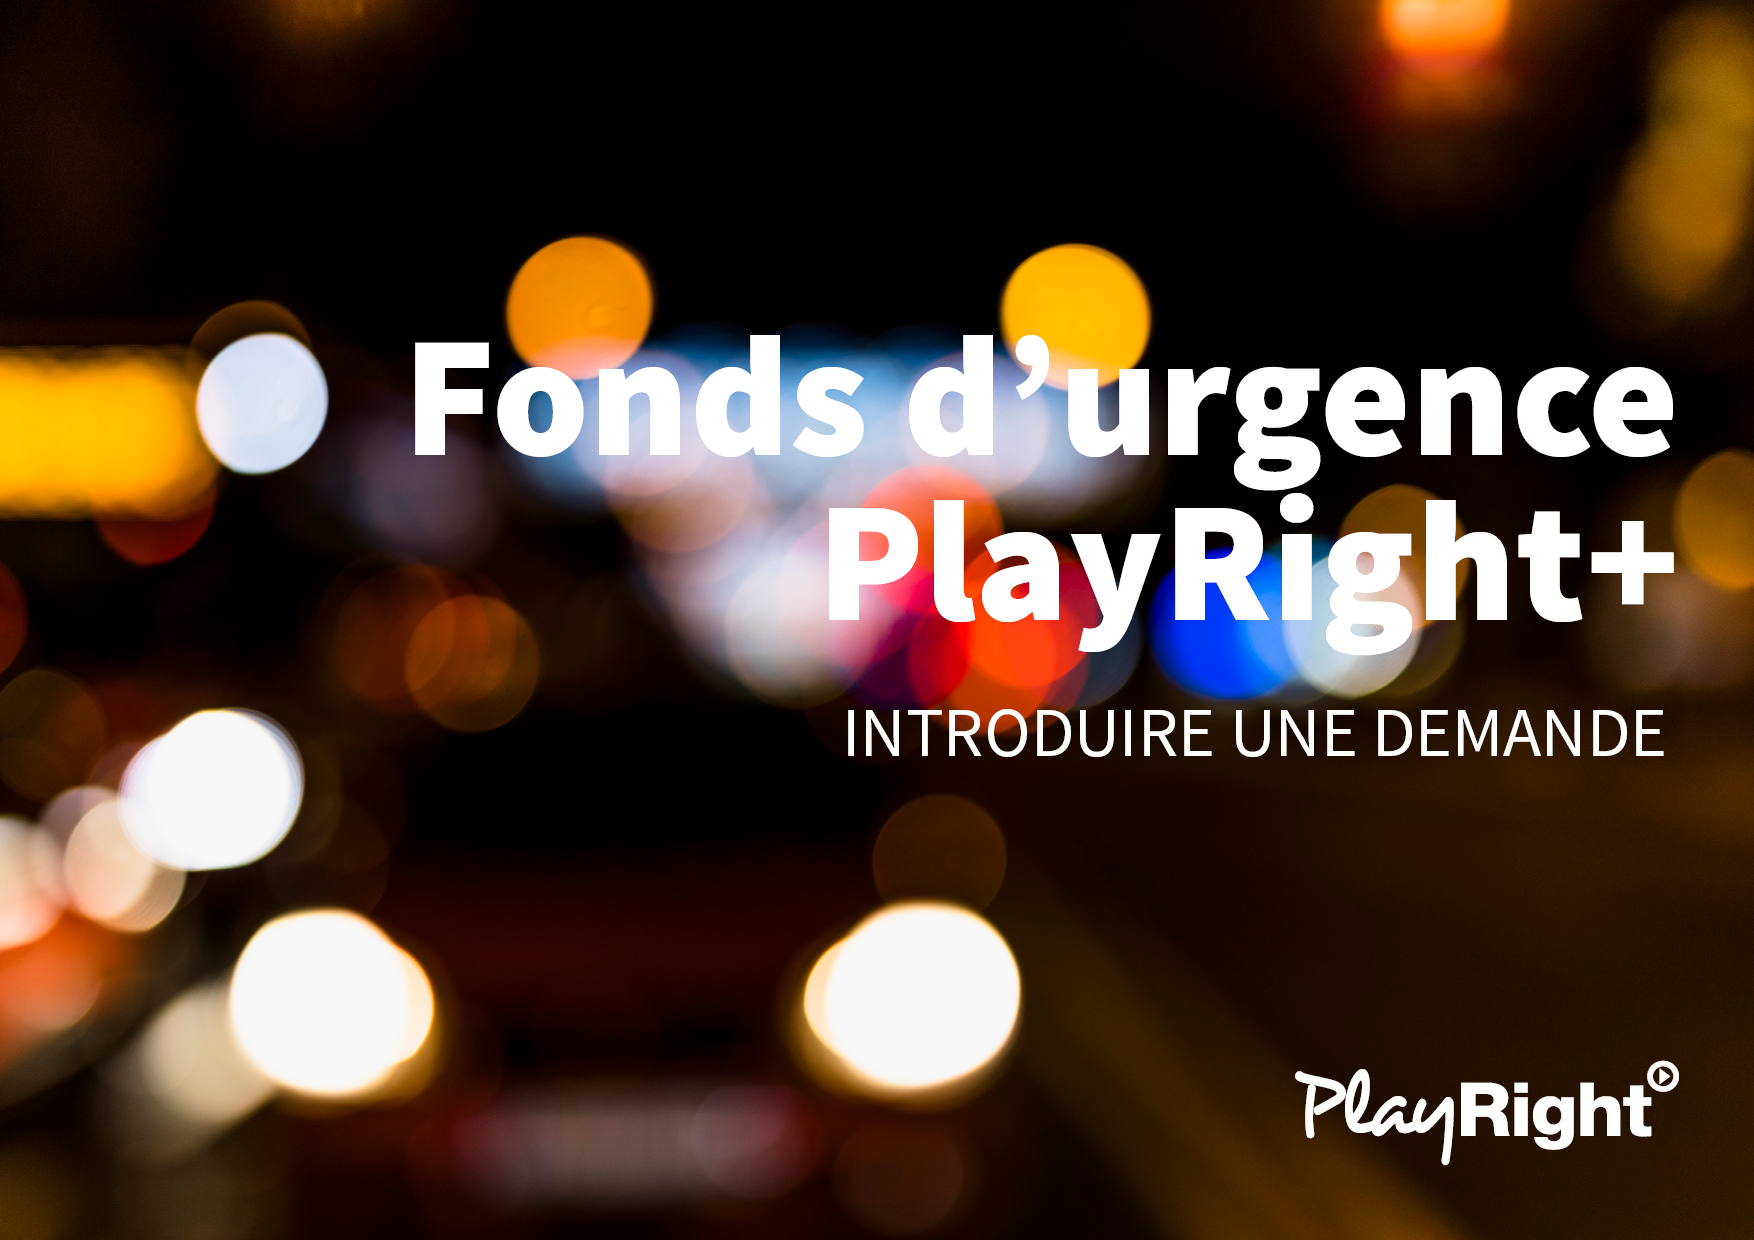 Fonds d’urgence PlayRight+ pour artistes: introduisez votre demande